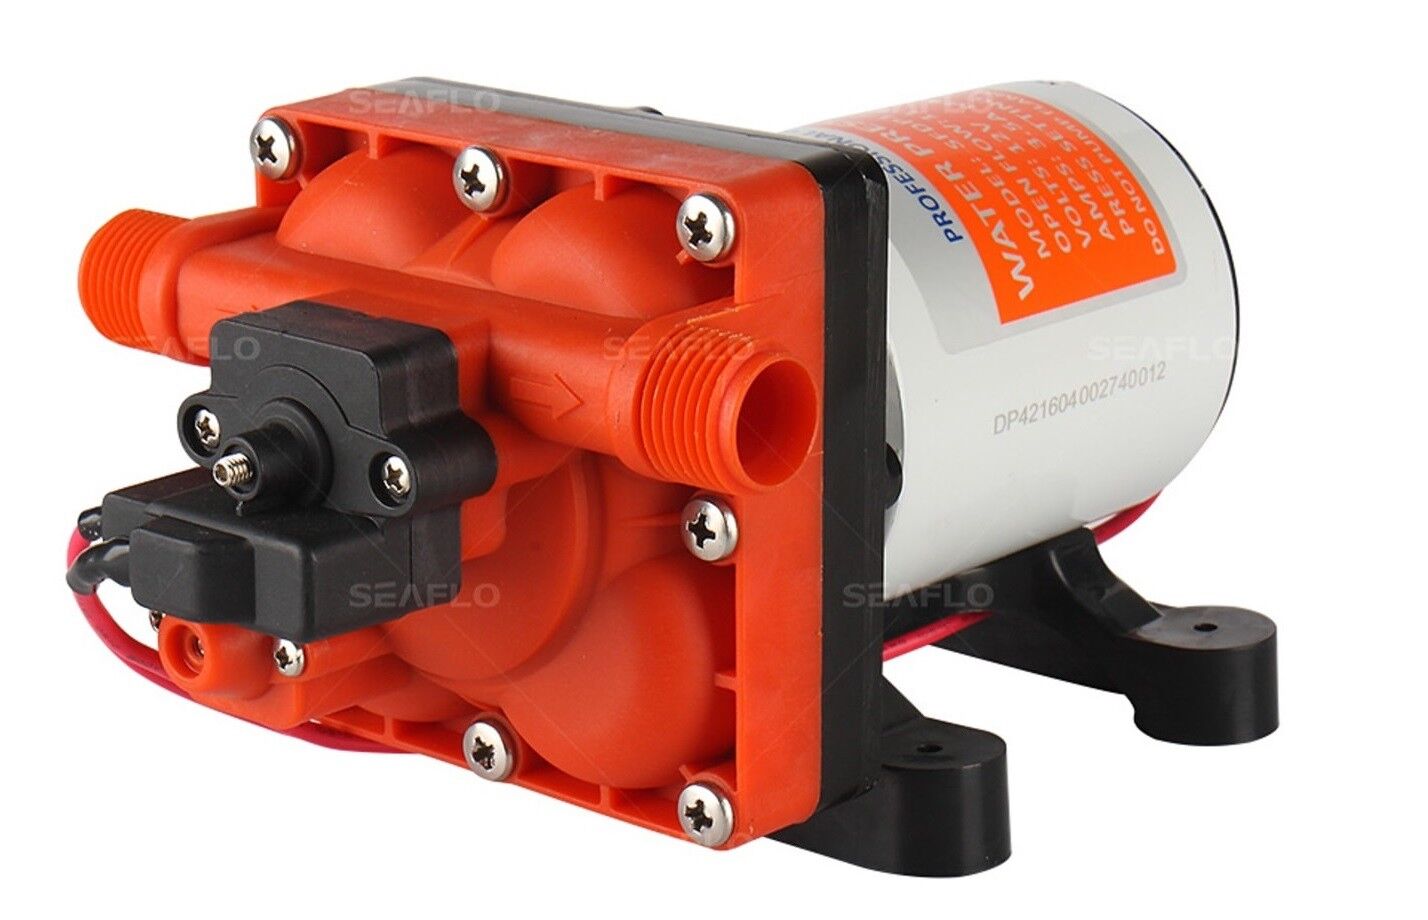 SEAFLO 42-Series 12V 3.0 GPM RV Water Pump Replaces SHURflo Revolution